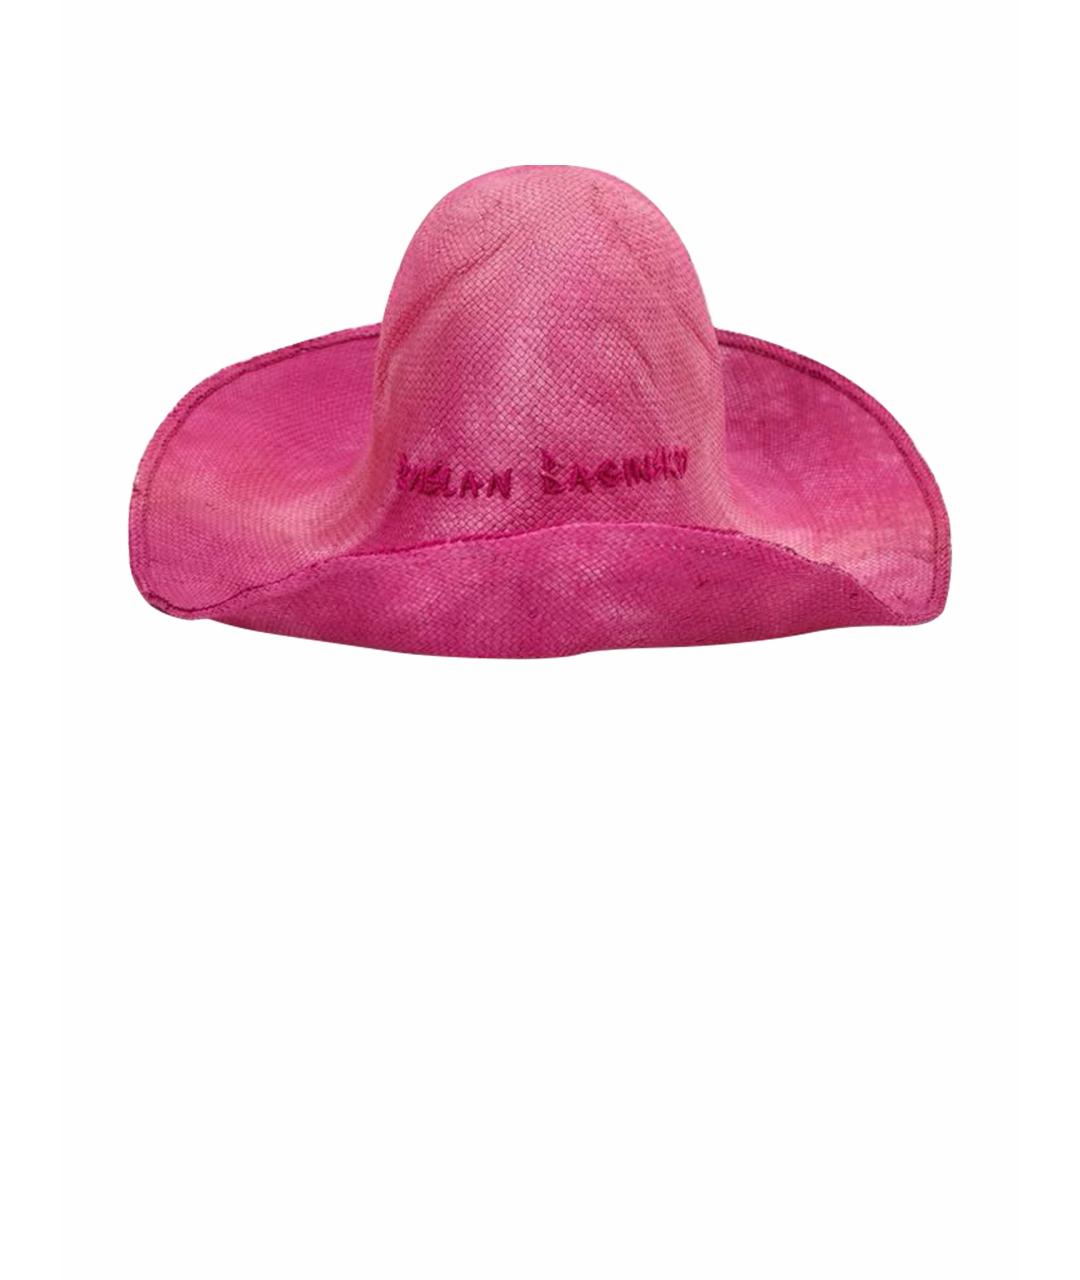 RUSLAN BAGINSKIY Розовая соломенная шляпа, фото 1